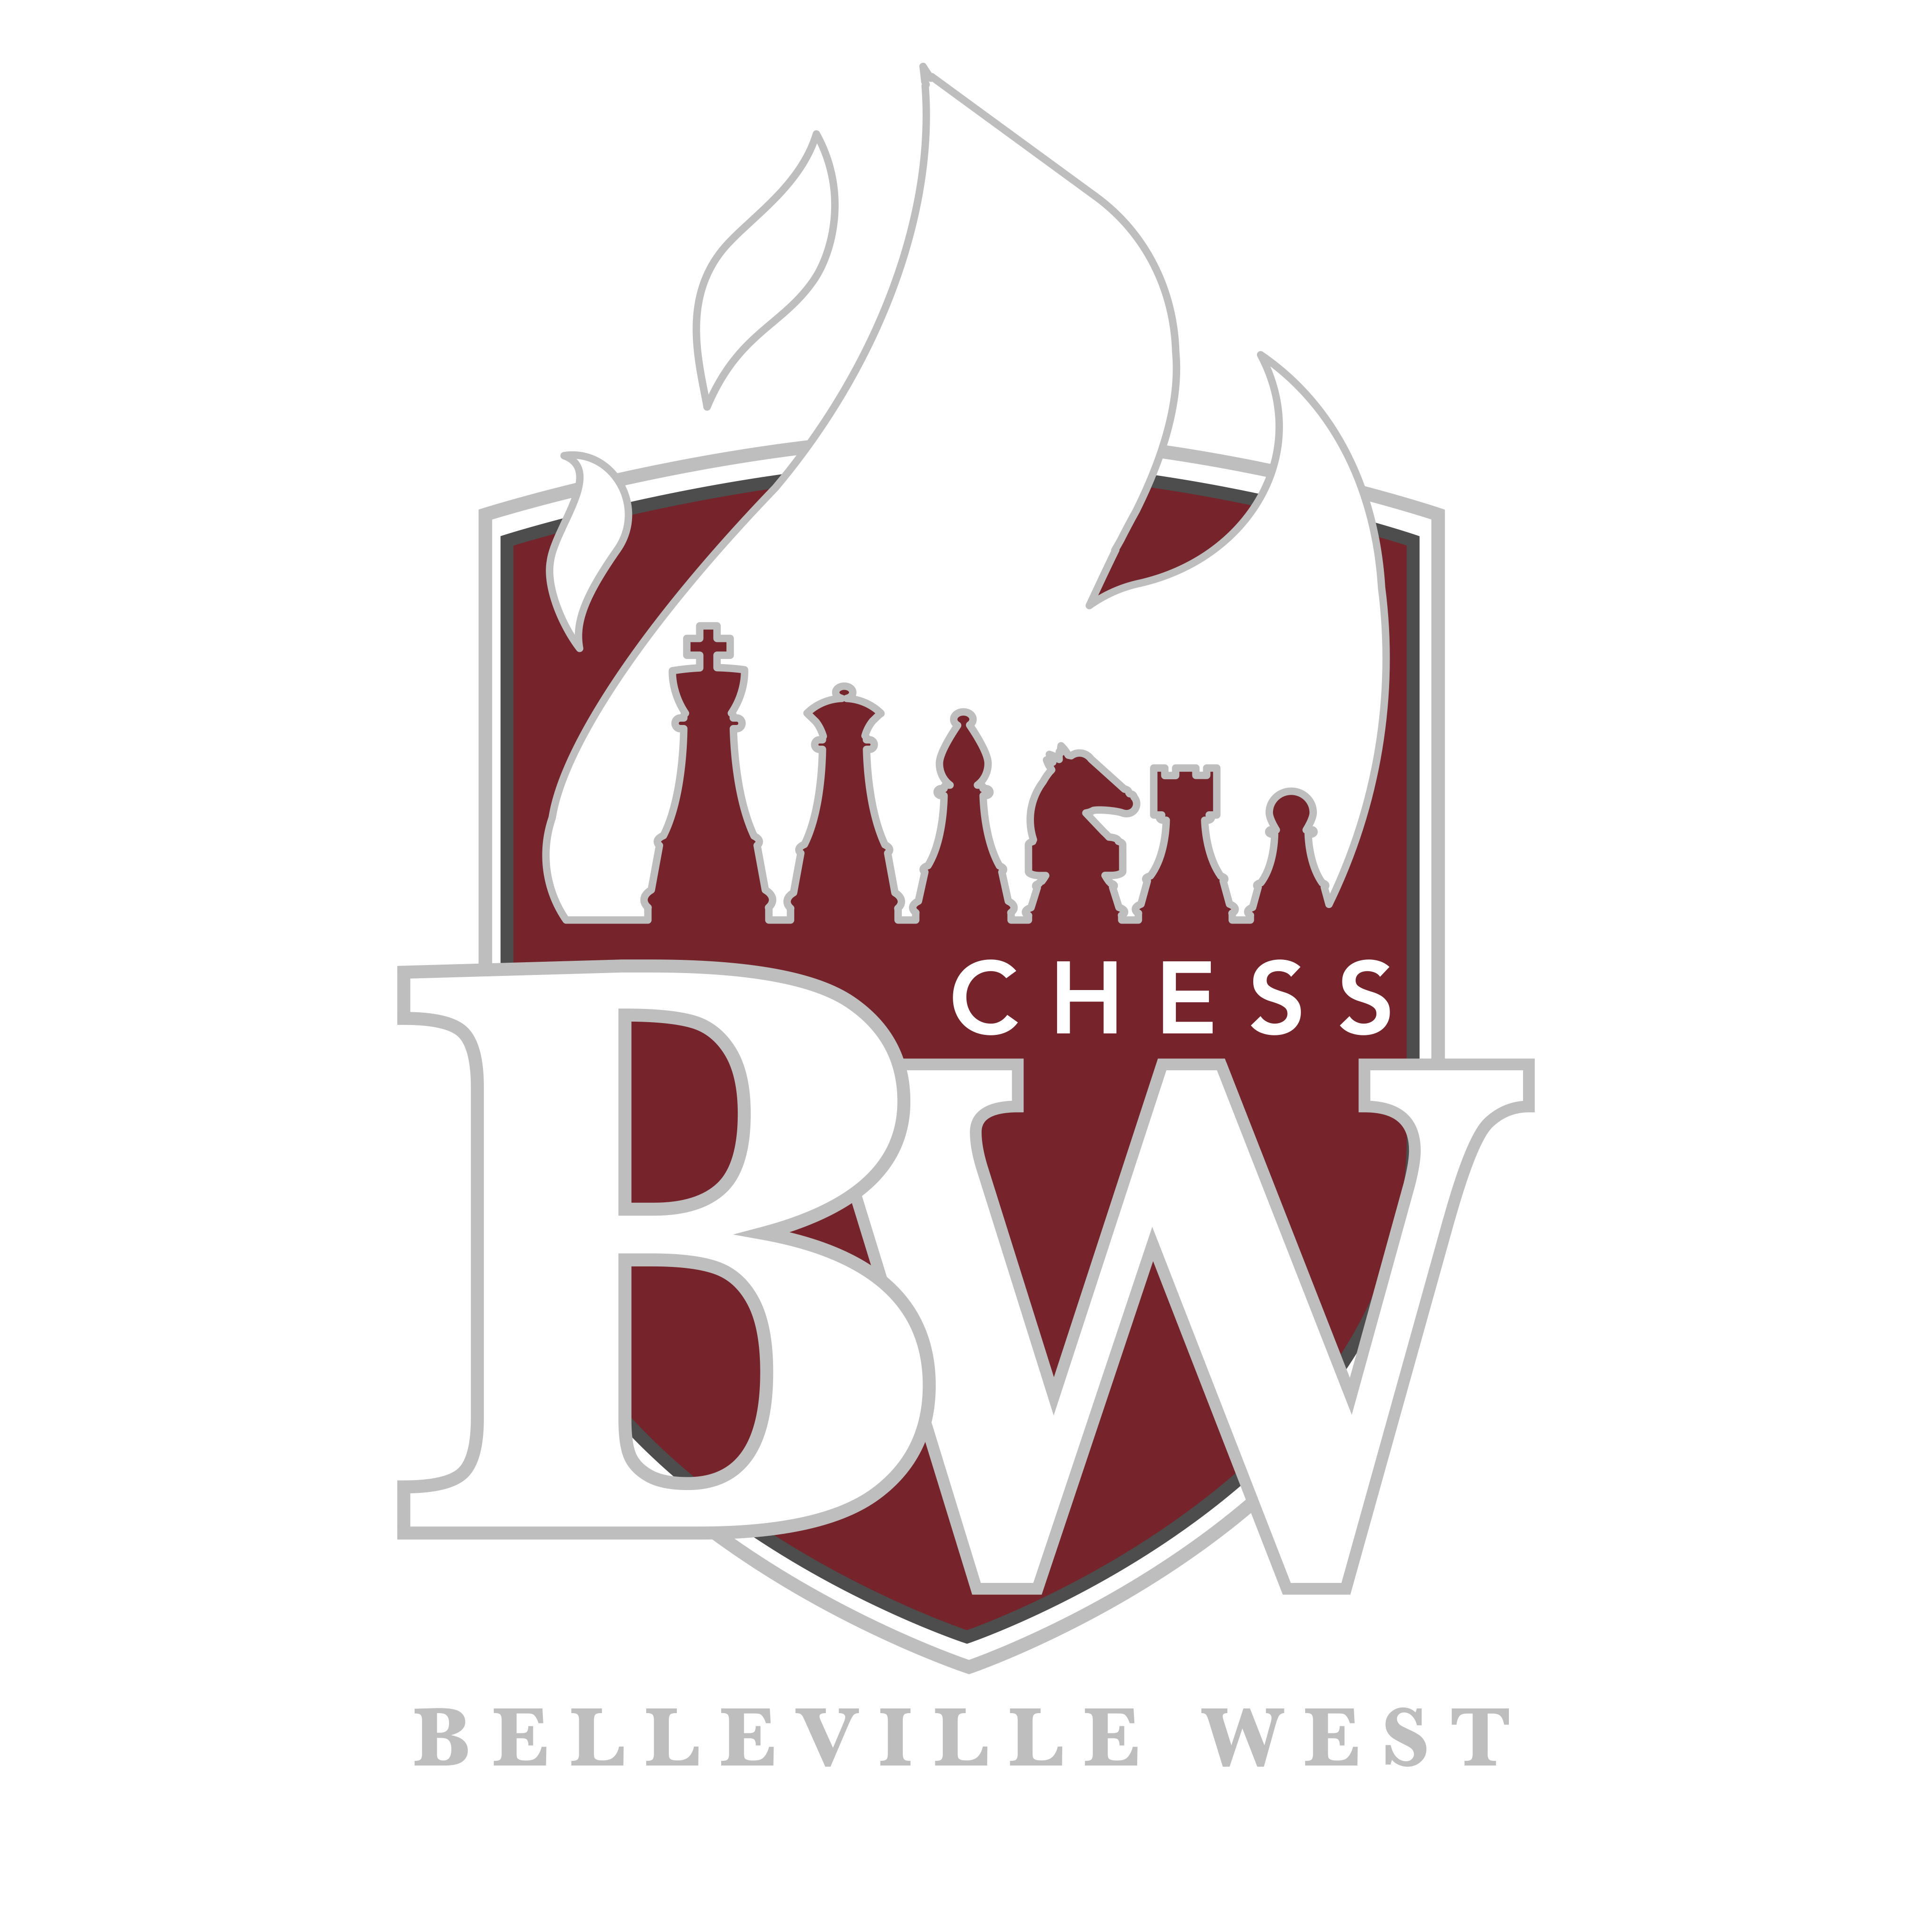 Belleville West Chess Club logo